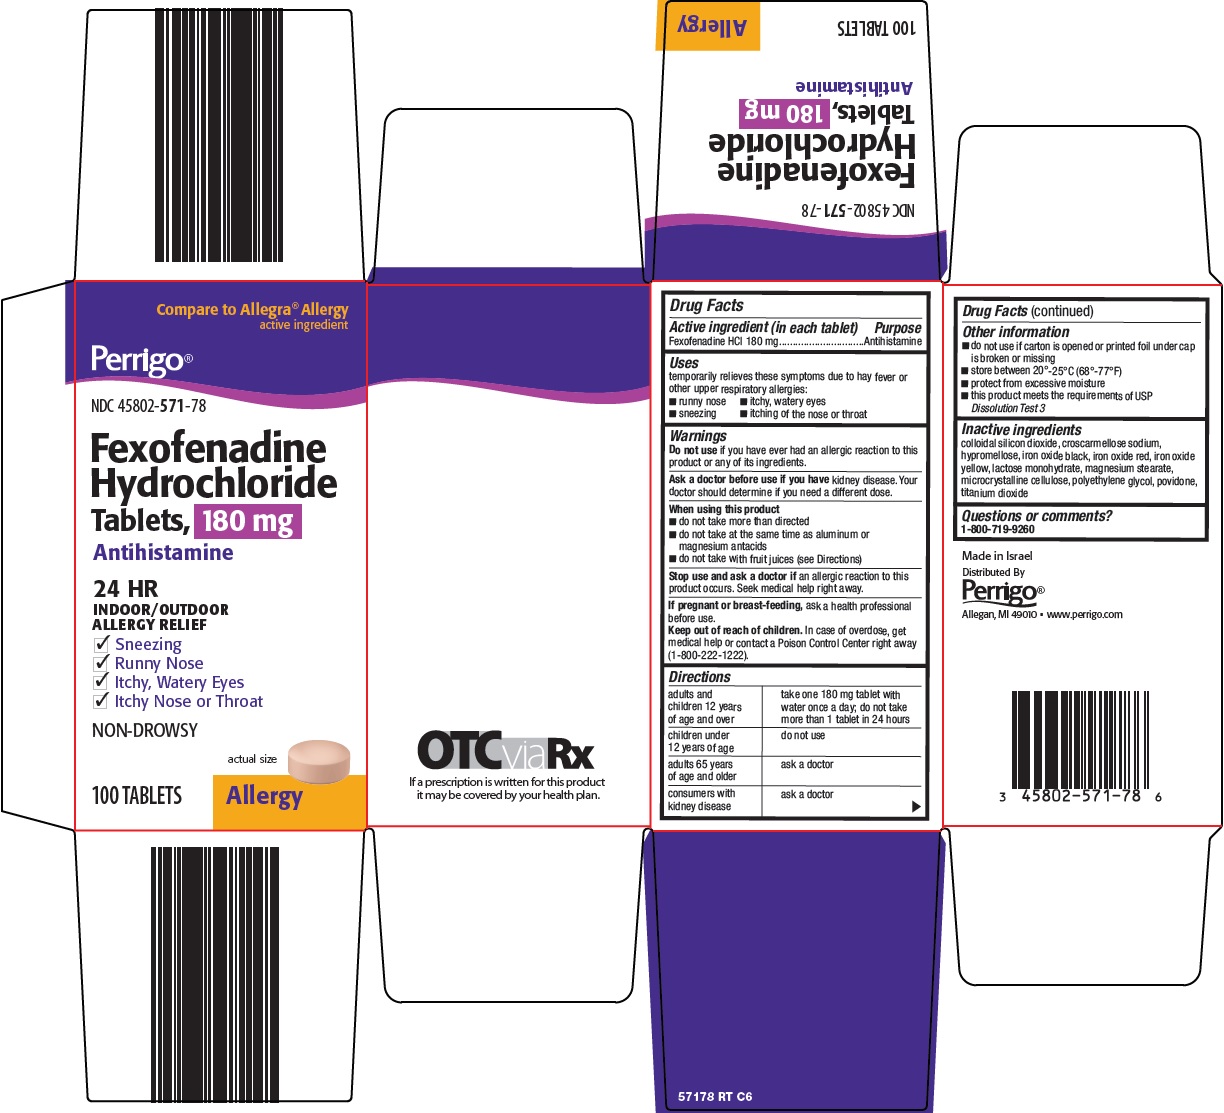 571-rt-fexofenadine-hydrochloride-tablets